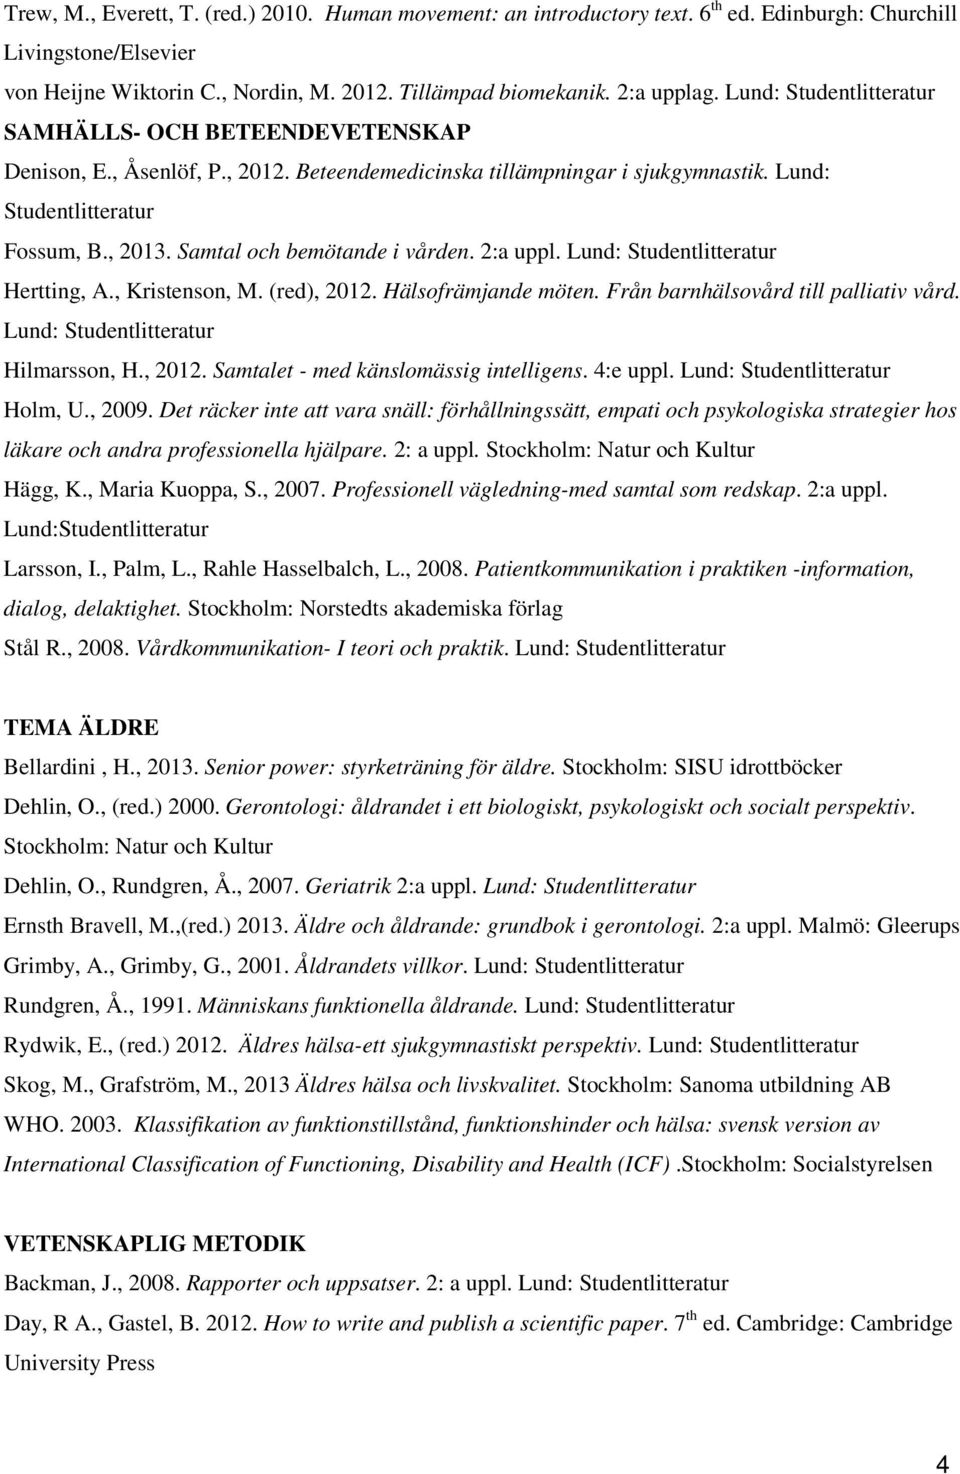 Lund: Hertting, A., Kristenson, M. (red), 2012. Hälsofrämjande möten. Från barnhälsovård till palliativ vård. Lund: Hilmarsson, H., 2012. Samtalet - med känslomässig intelligens. 4:e uppl.